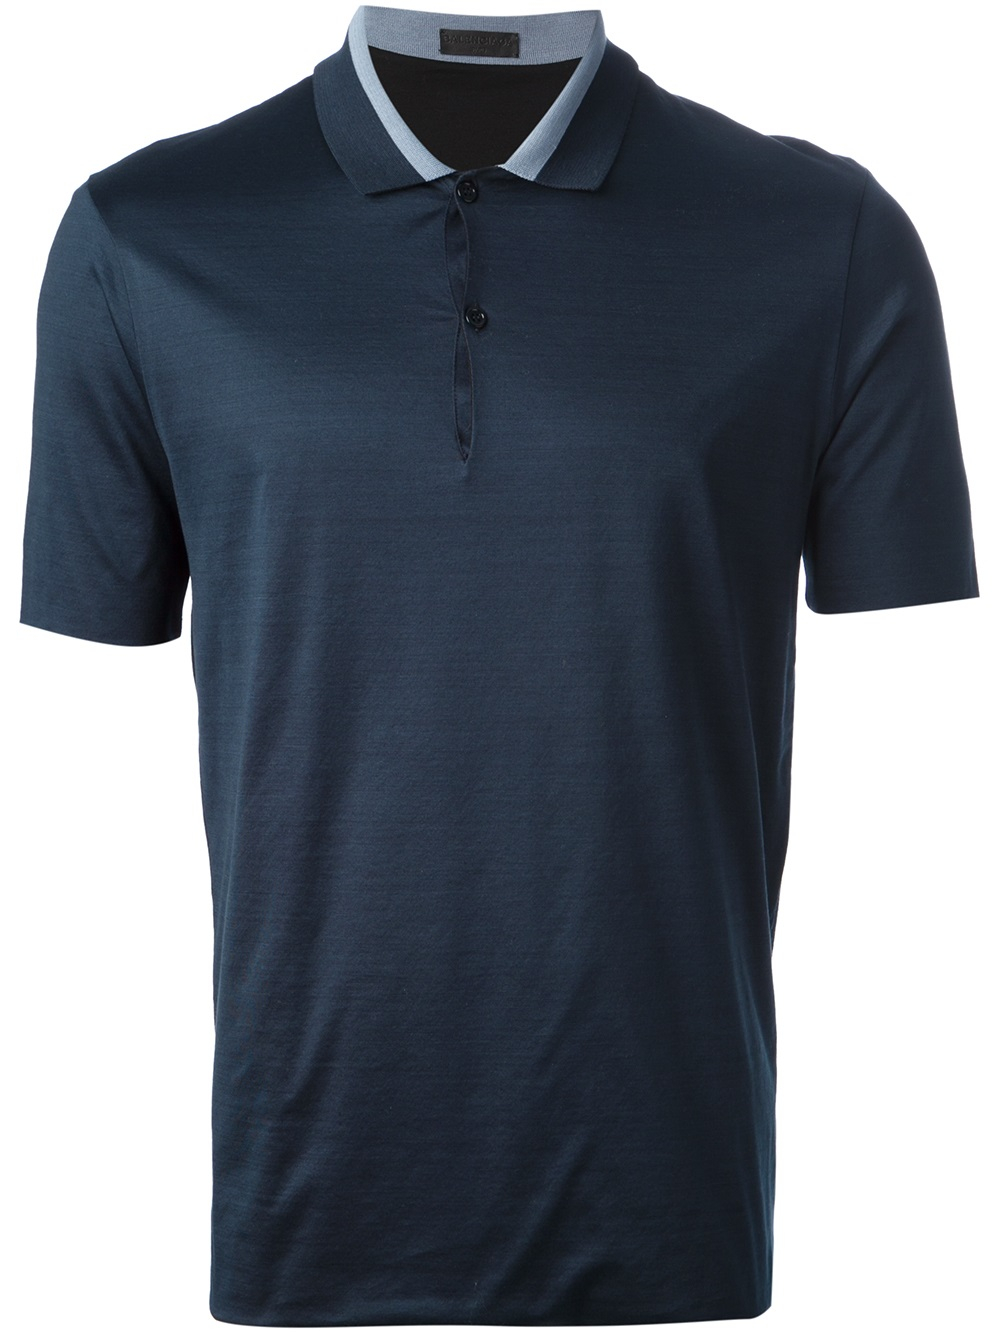 Balenciaga Reversible Polo Shirt in Blue for Men - Lyst